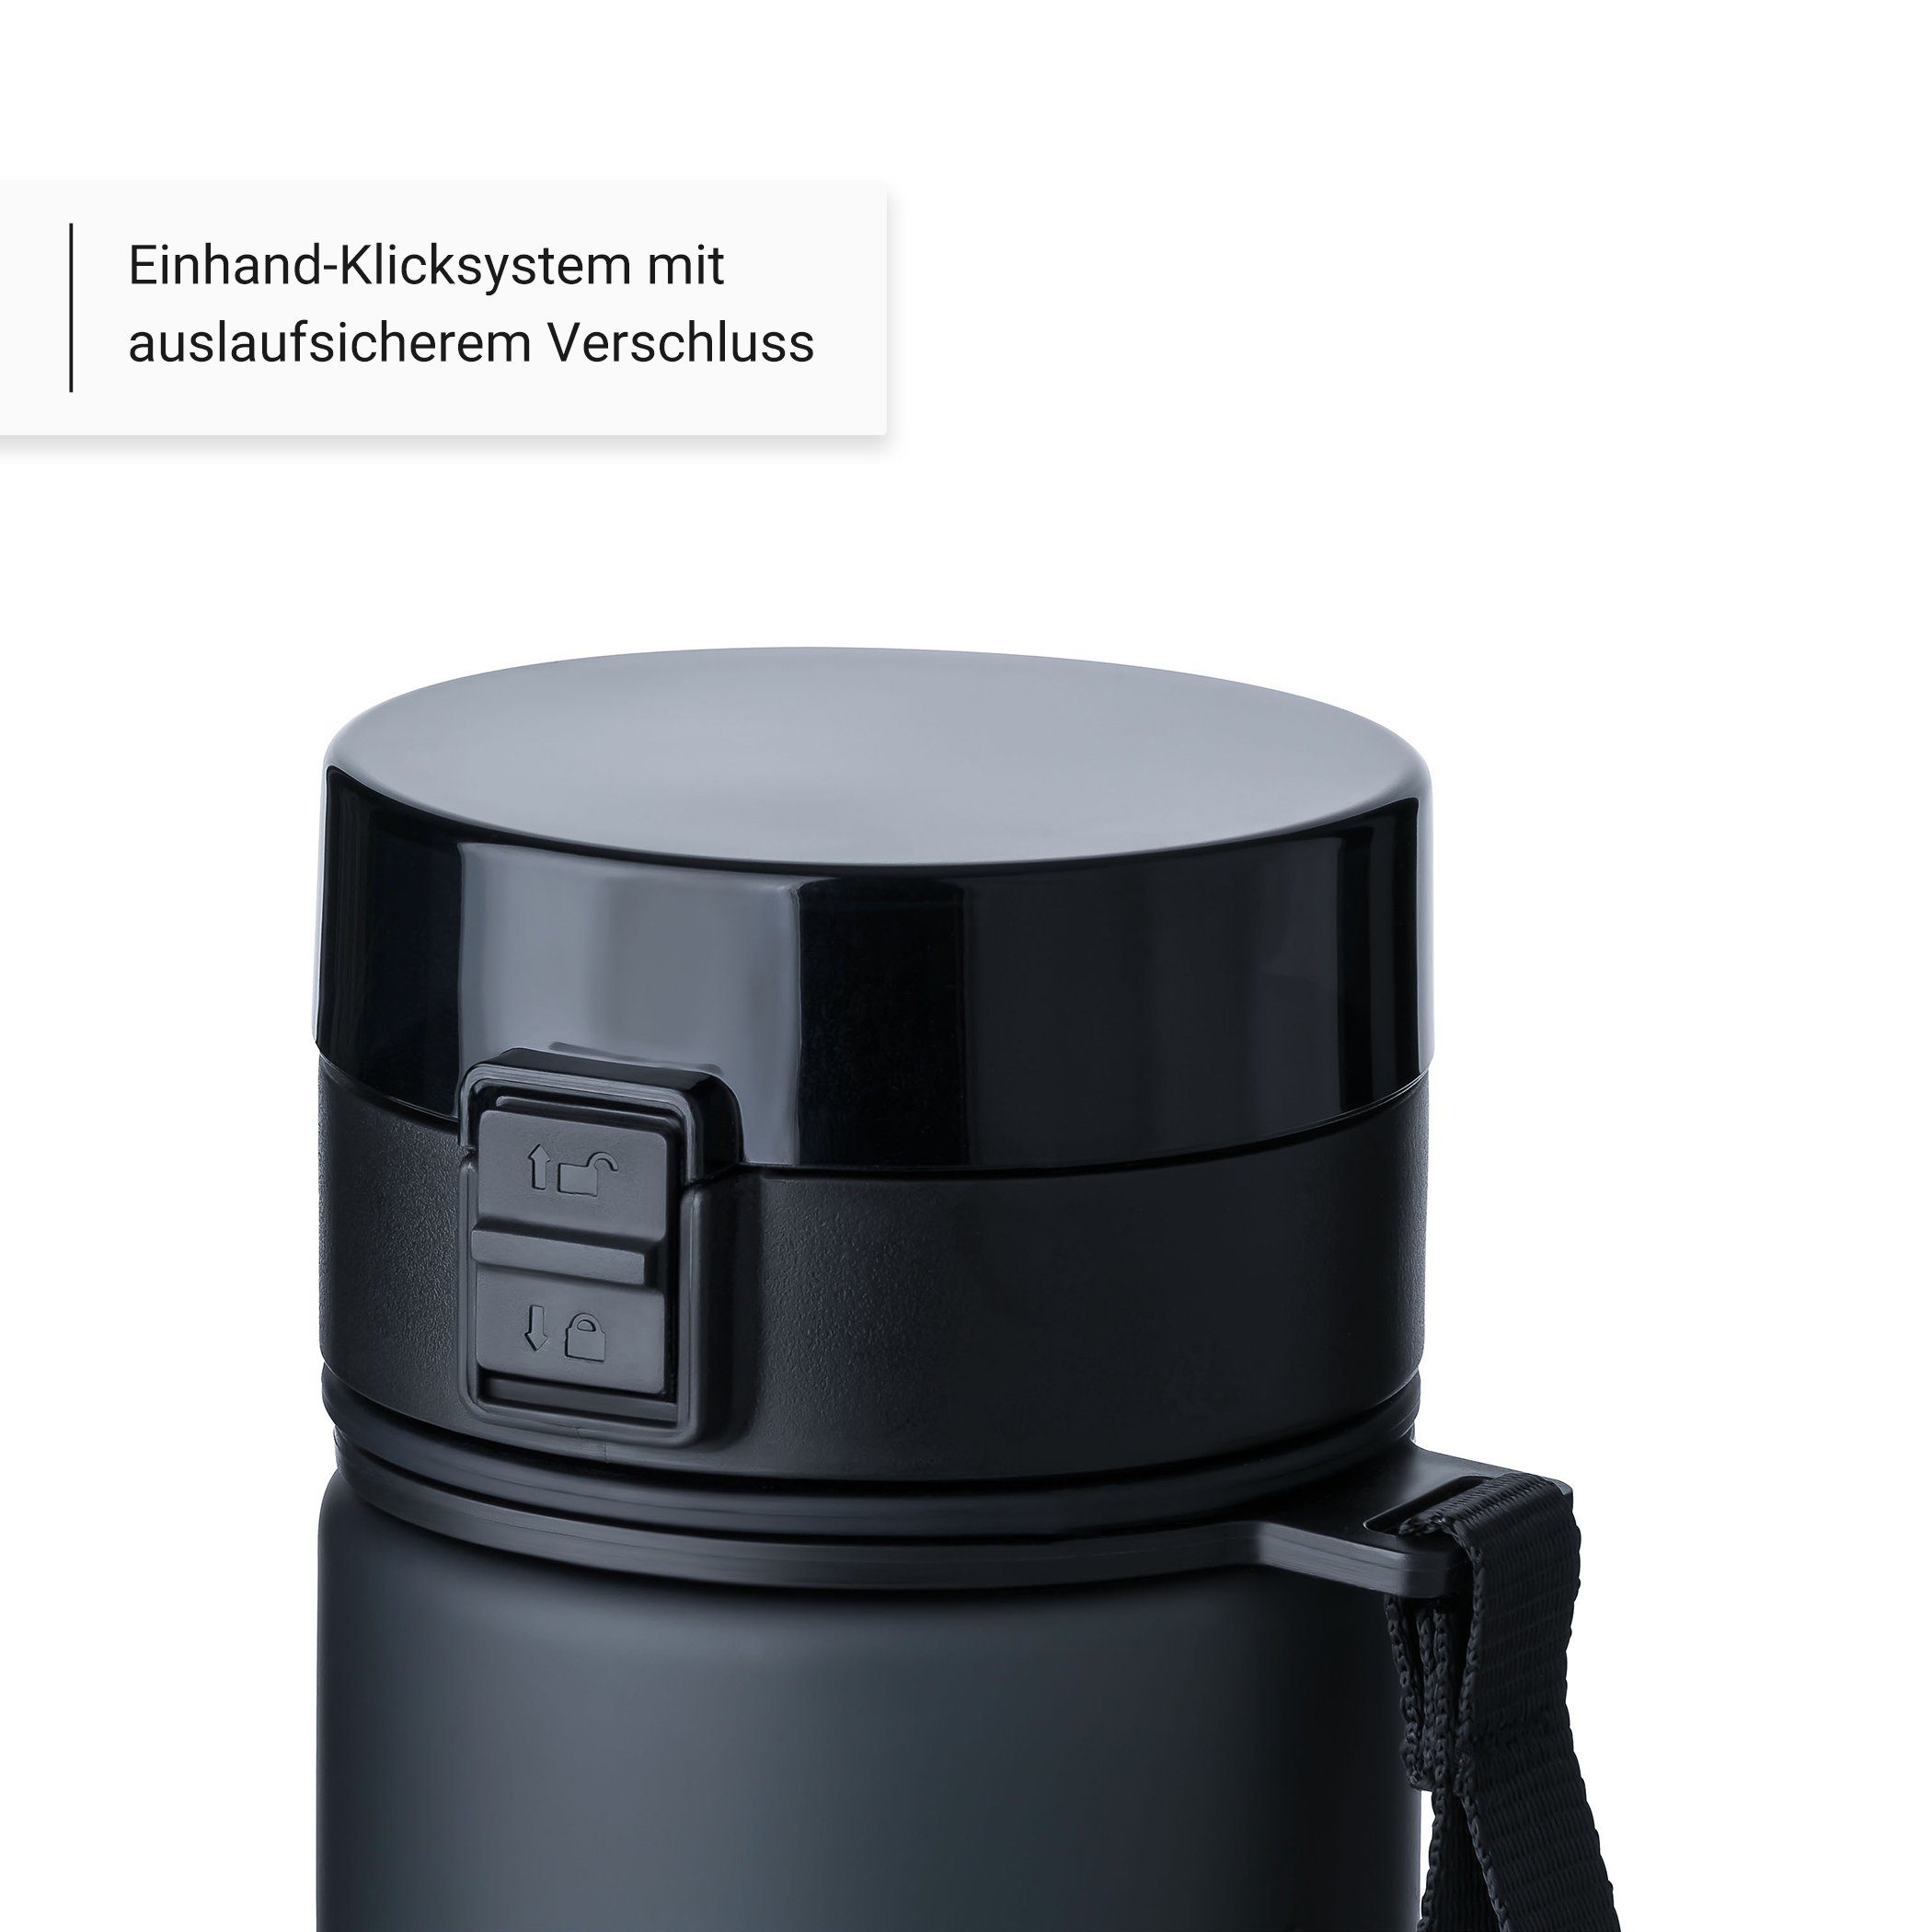 Kohlensäure Schwarz, auslaufsicher - geeignet, frei, Vinsun 1L, Trinkflasche auslaufsicher BPA und Geruchs- Geschmacksneutral, Kohlensäure, Trinkflasche